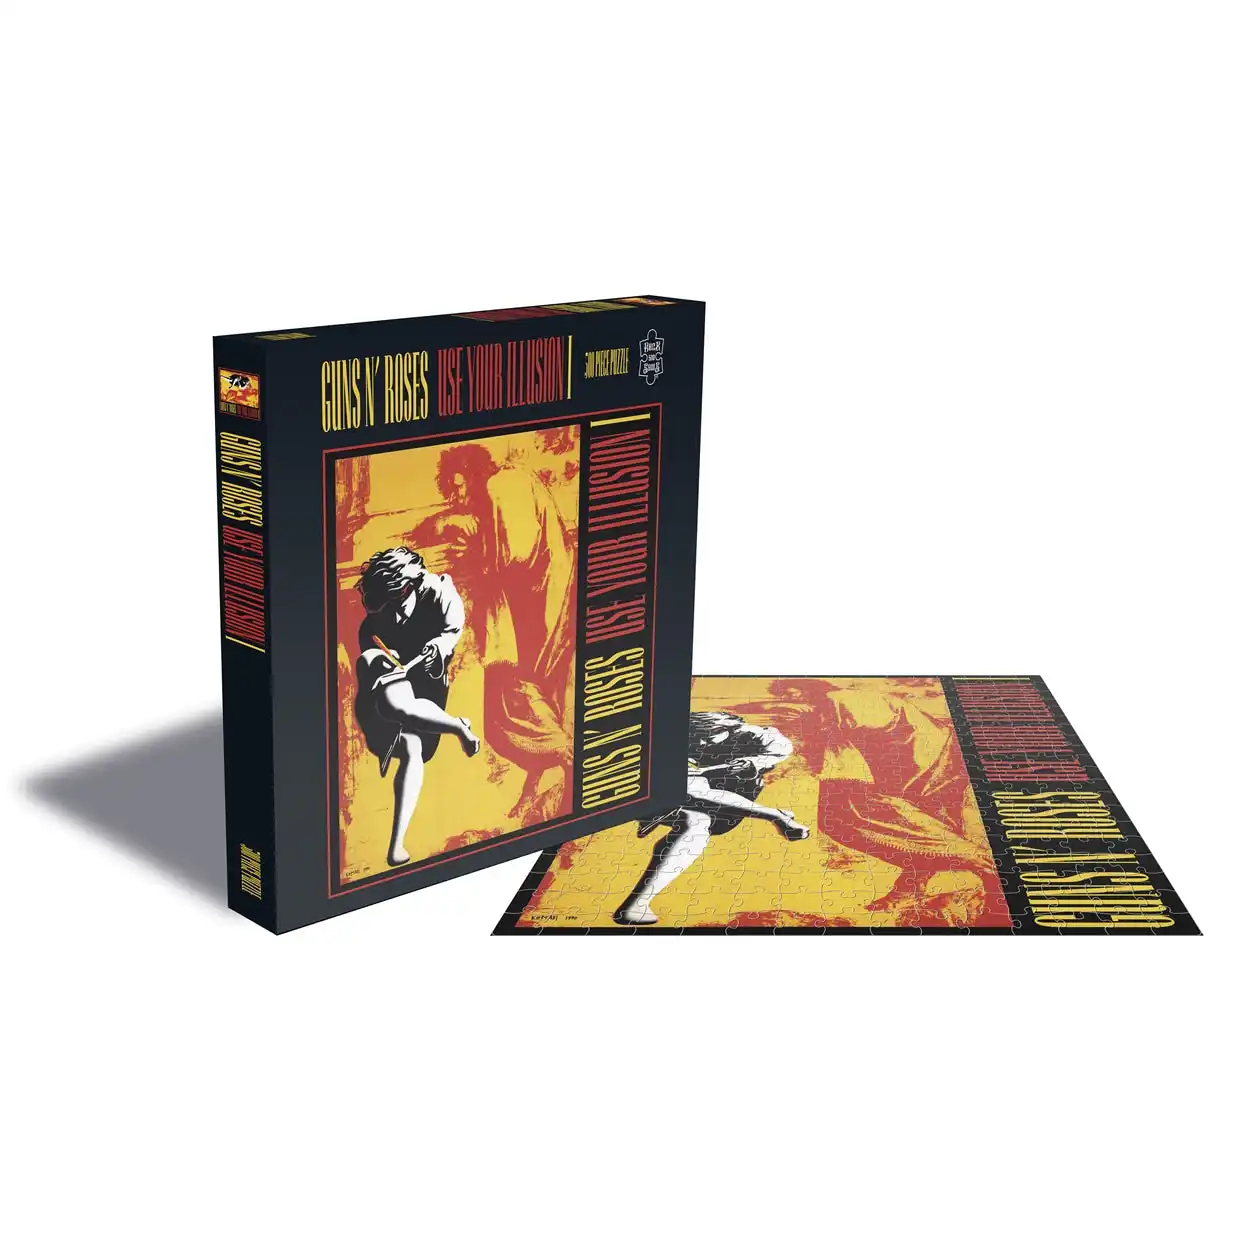 Guns N' Roses - Use Your Illusion 1 Album Cover 500pc Puzzle